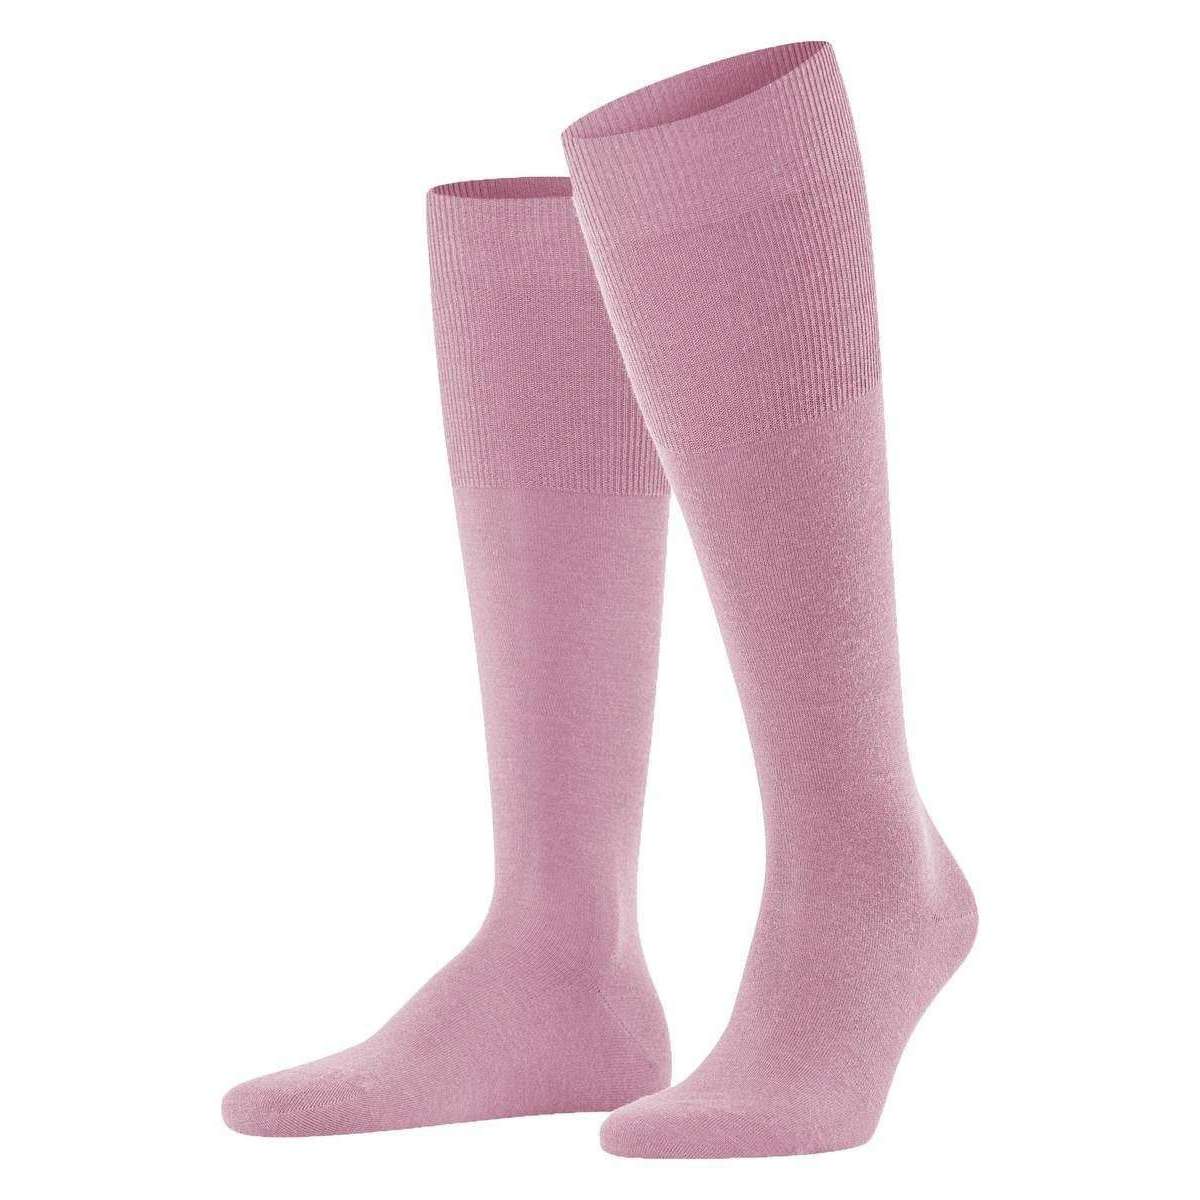 Falke Airport Knee-High Socks - Light Rosa Pink